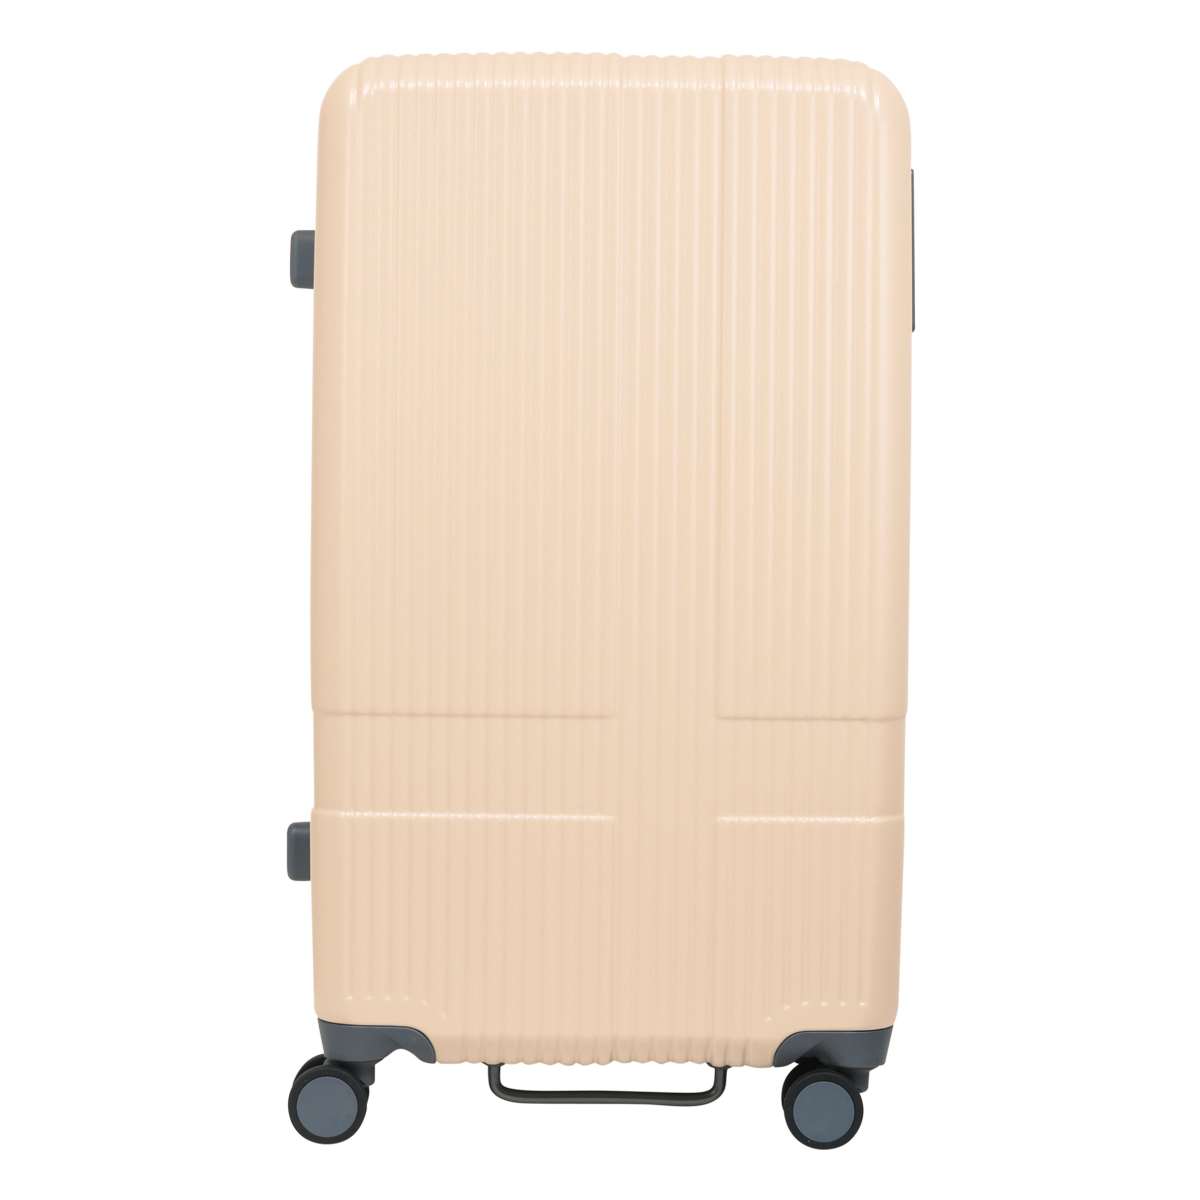 イノベーター スーツケース 2年保証 INV70 Mサイズ 75L innovator EXTREM...